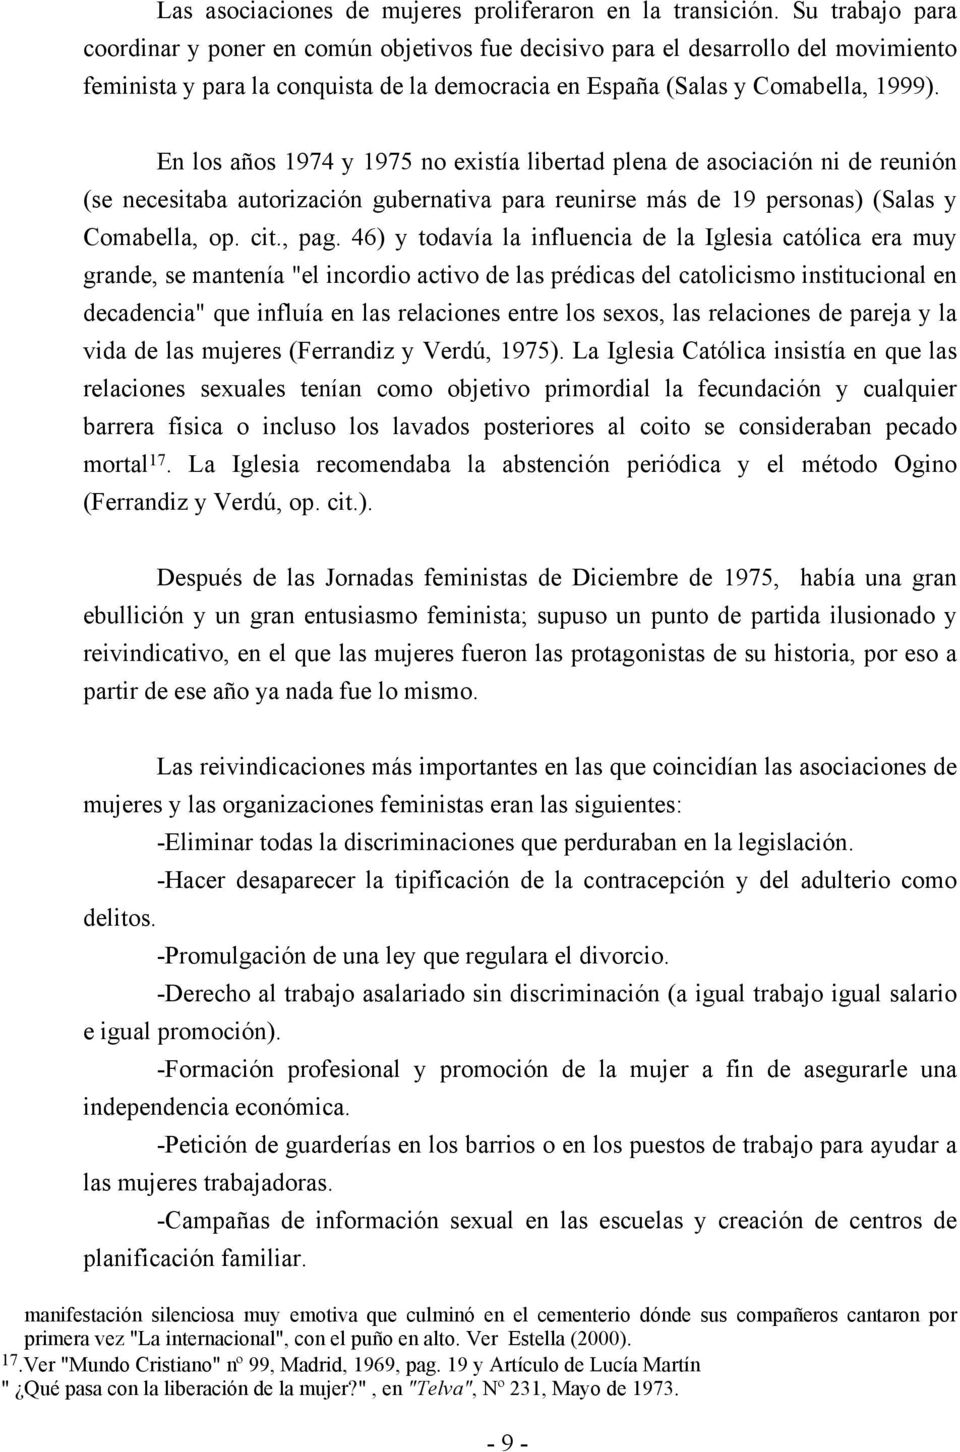 En los años 1974 y 1975 no existía libertad plena de asociación ni de reunión (se necesitaba autorización gubernativa para reunirse más de 19 personas) (Salas y Comabella, op. cit., pag.